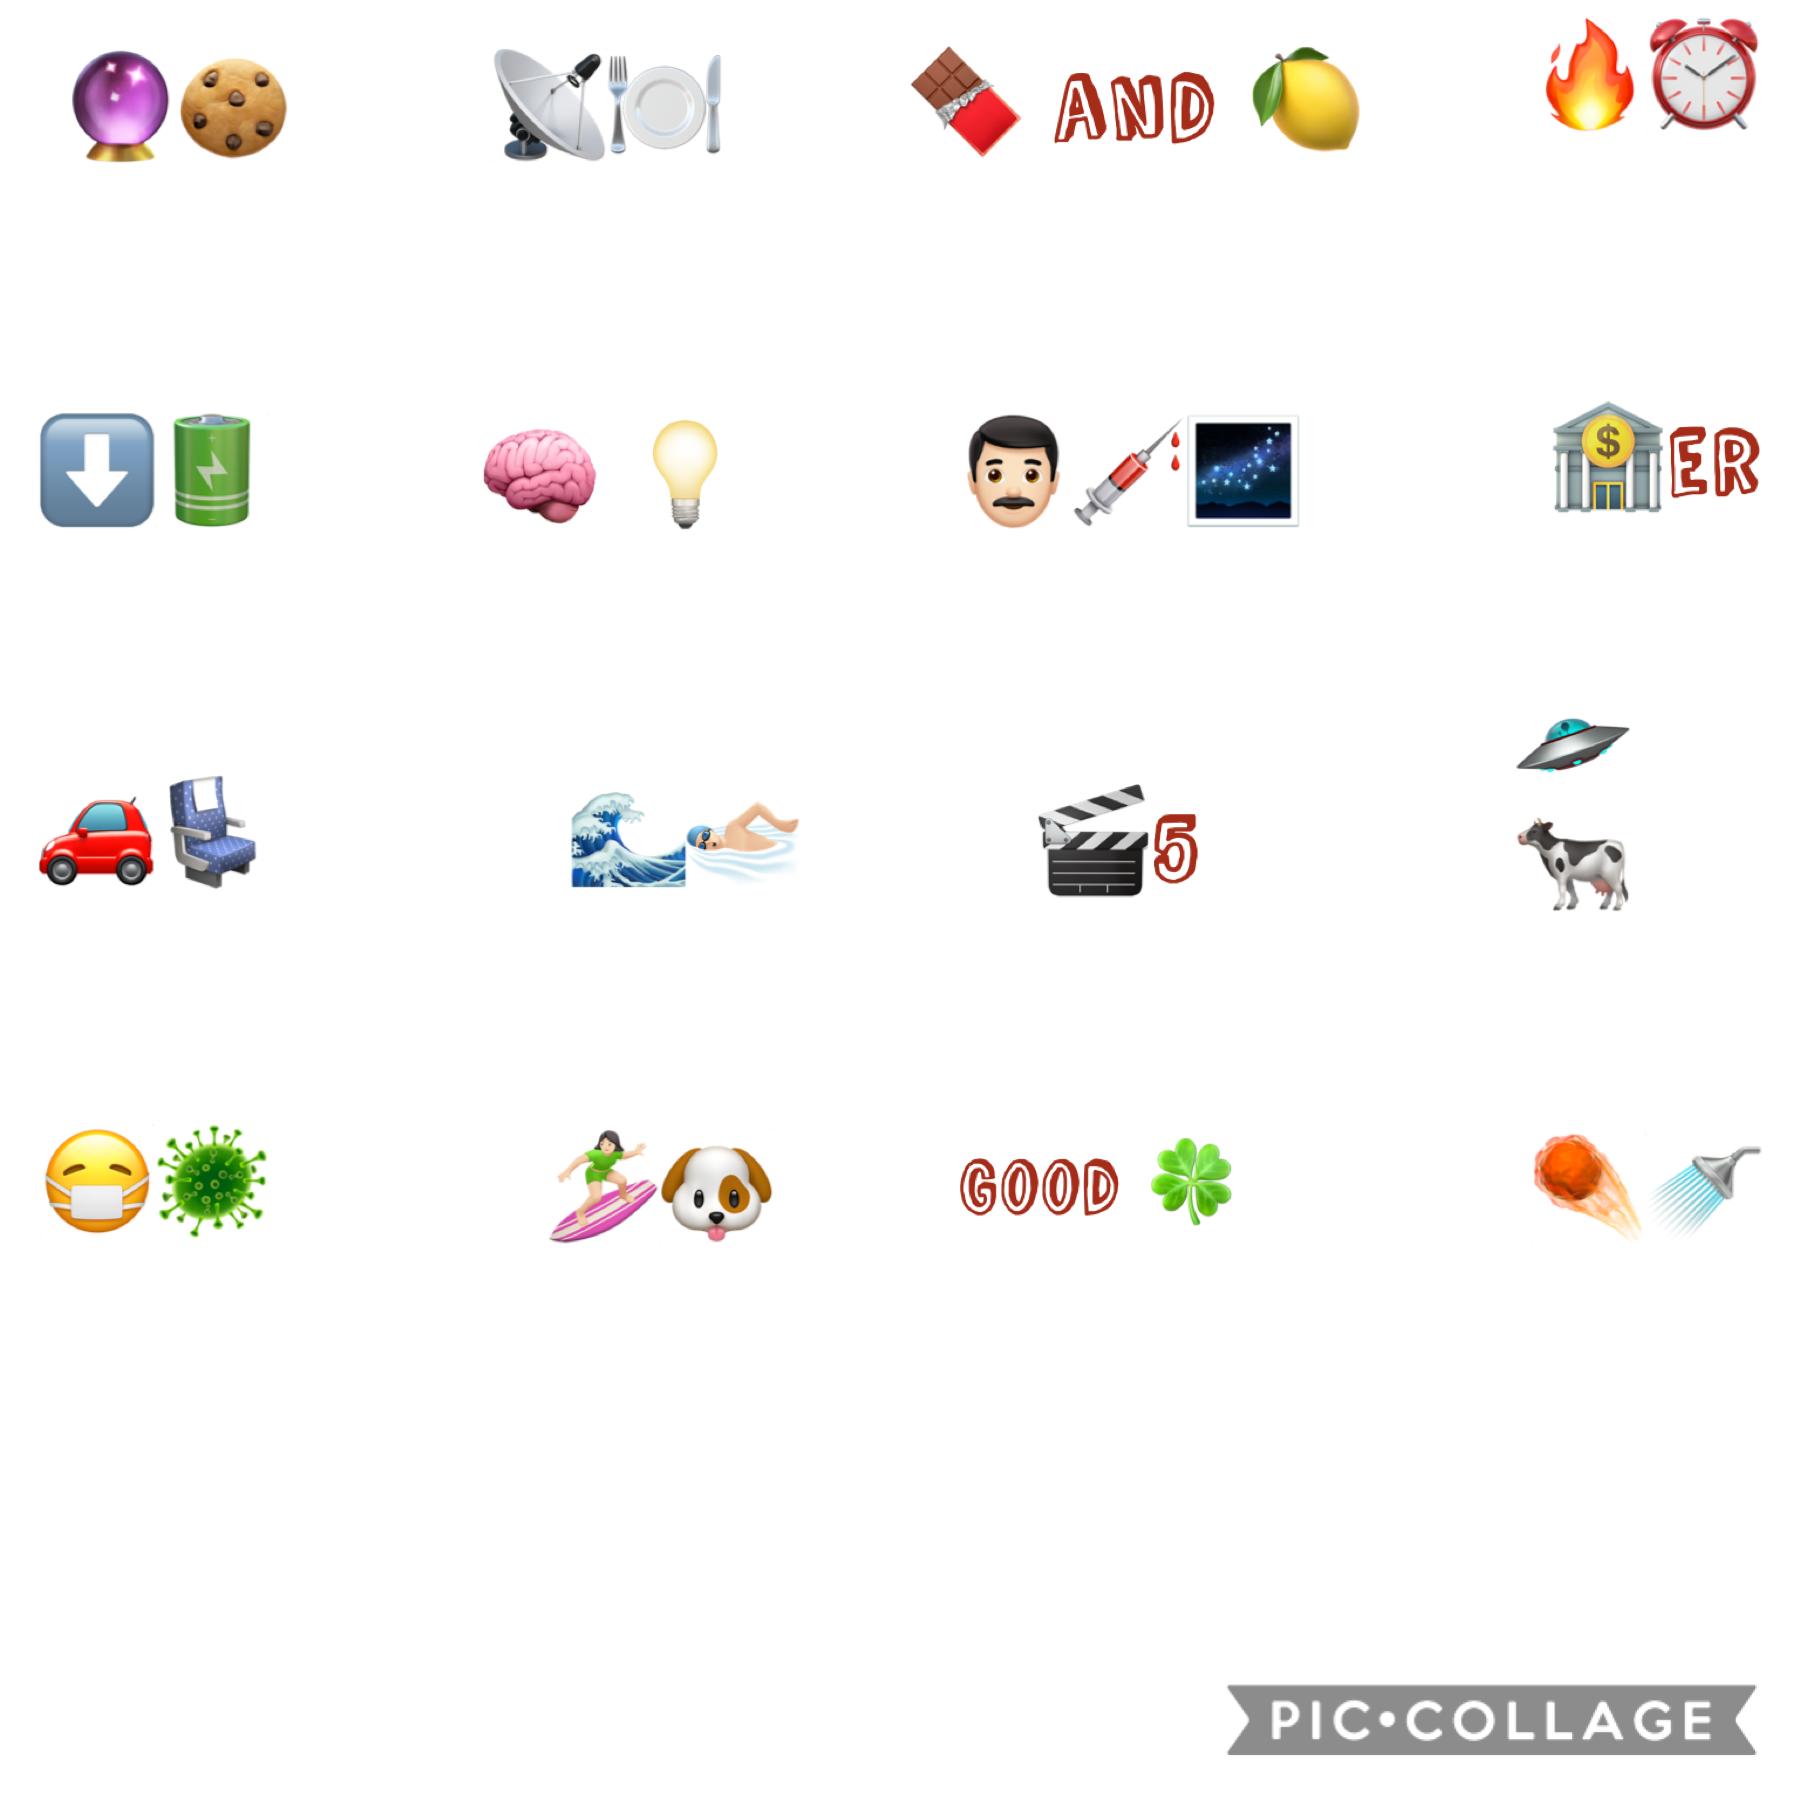 ⭐️tap⭐️
Guess the emoji